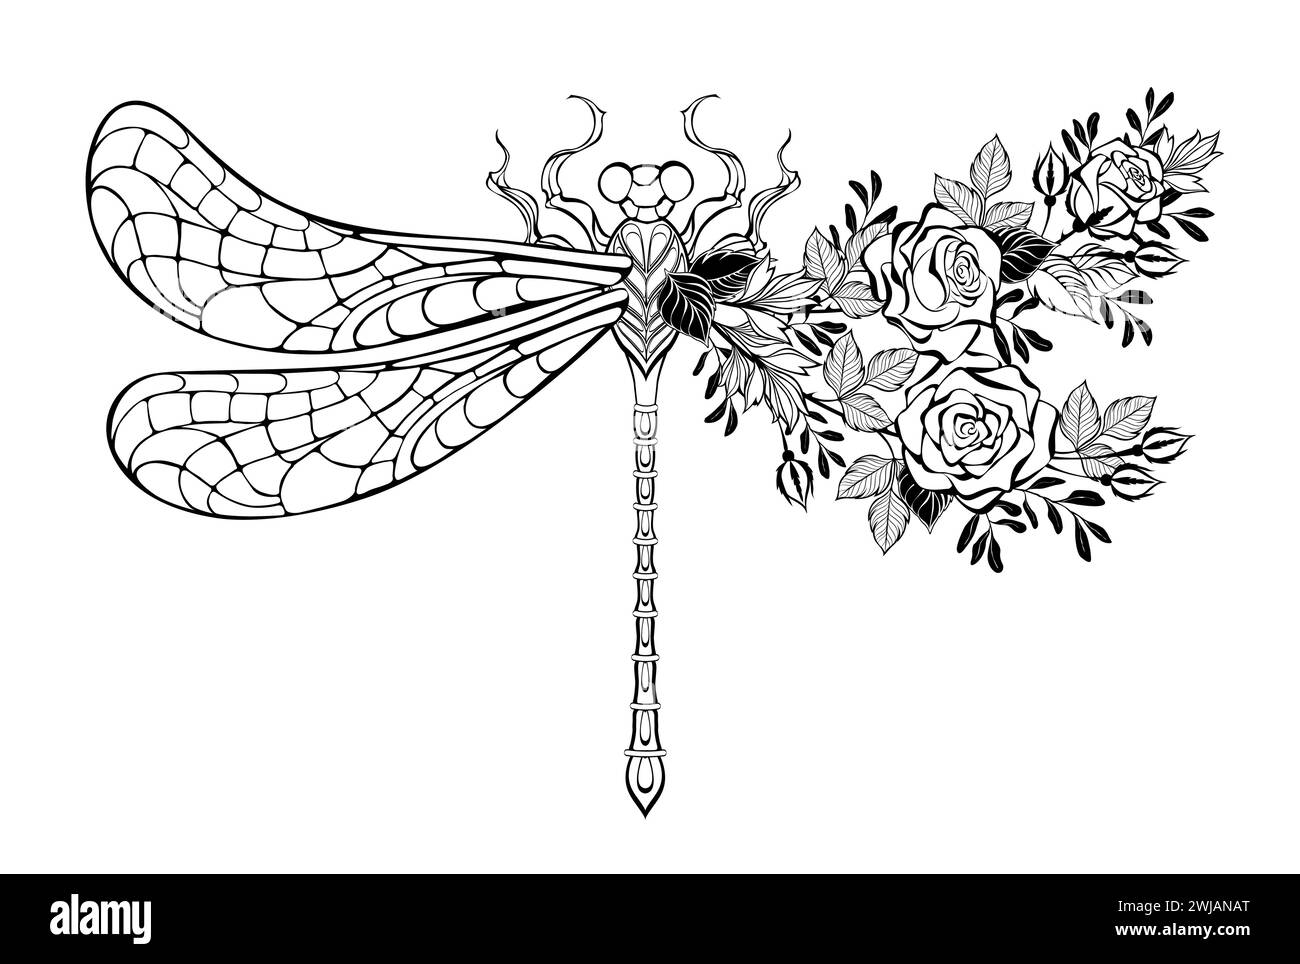 Contorno, libellula asimmetrica stilizzata, decorata con rose in fiore e rami di pistacchio su sfondo bianco. Colorazione. Illustrazione Vettoriale